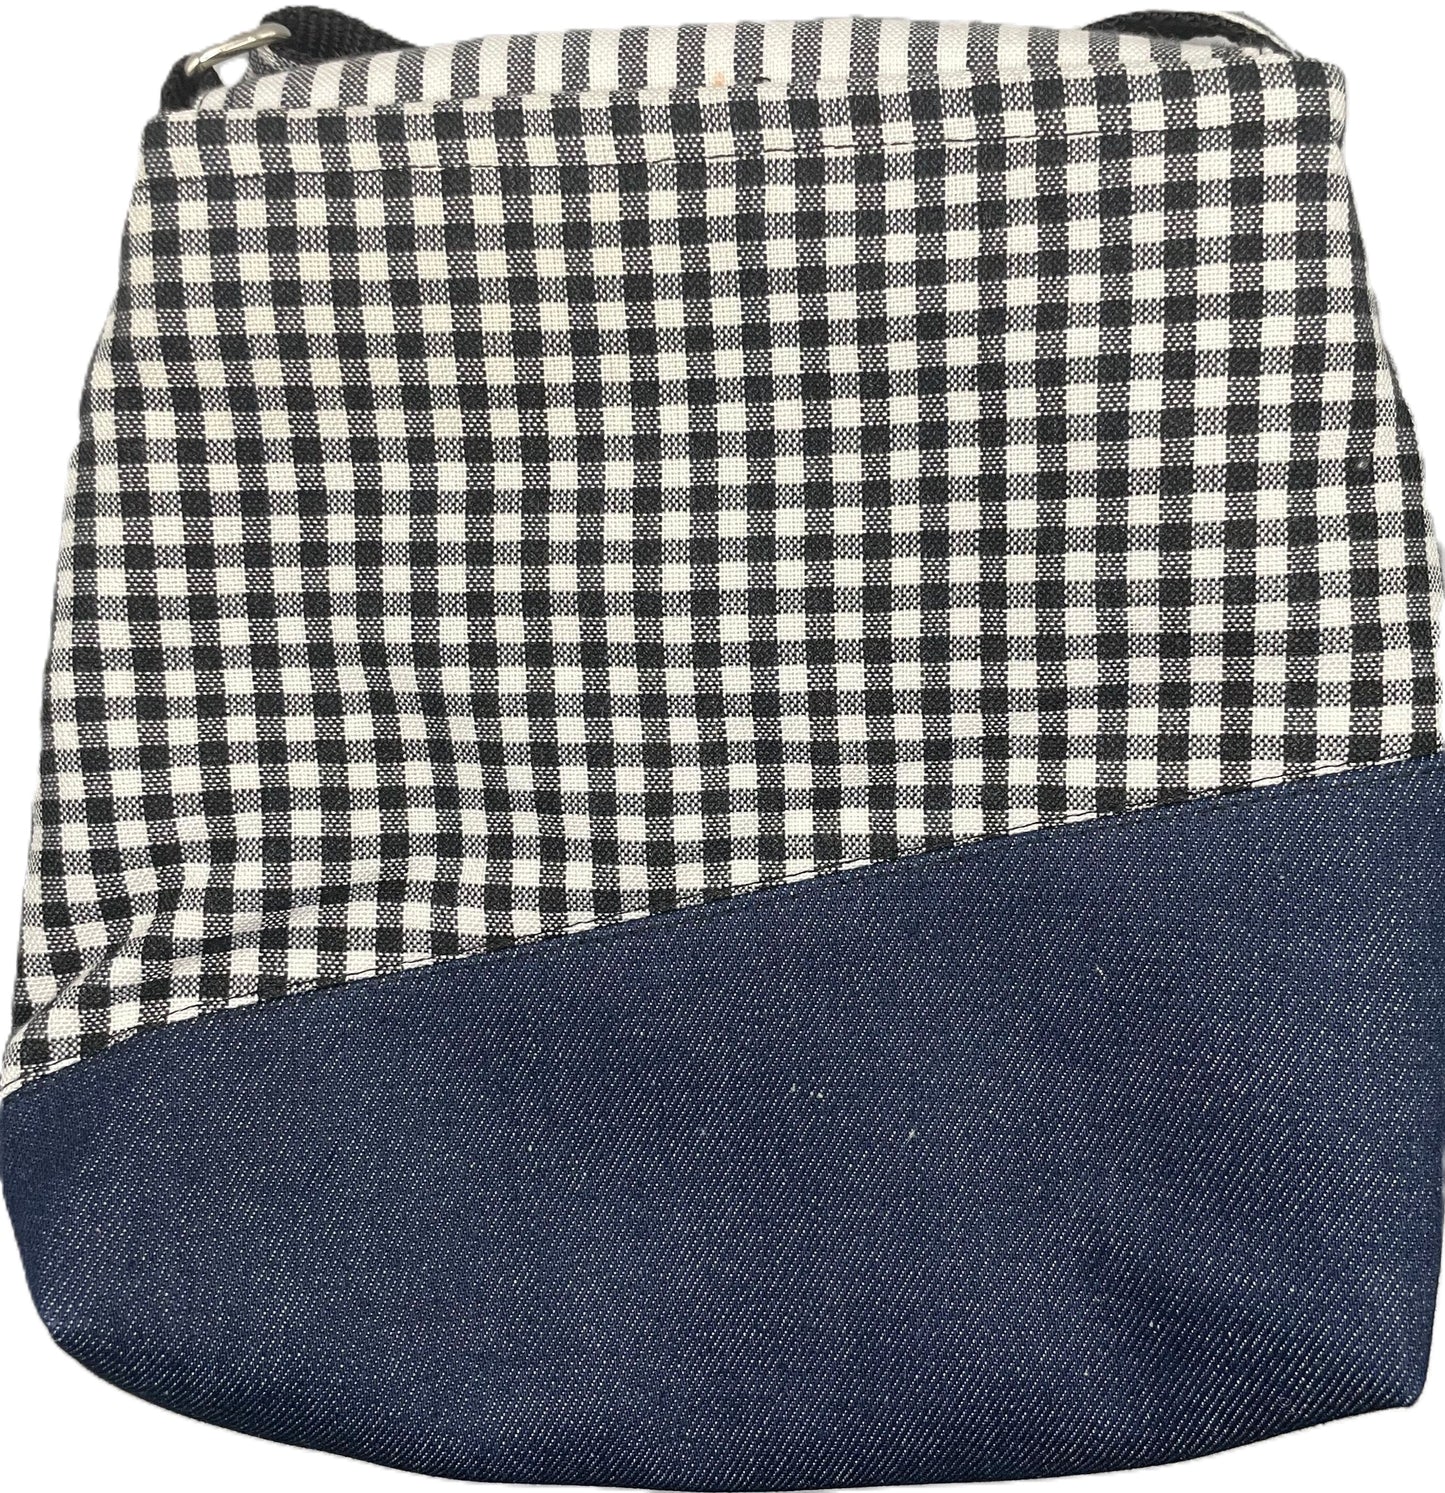 Blue Denim & Black - Small Shoulder Bag